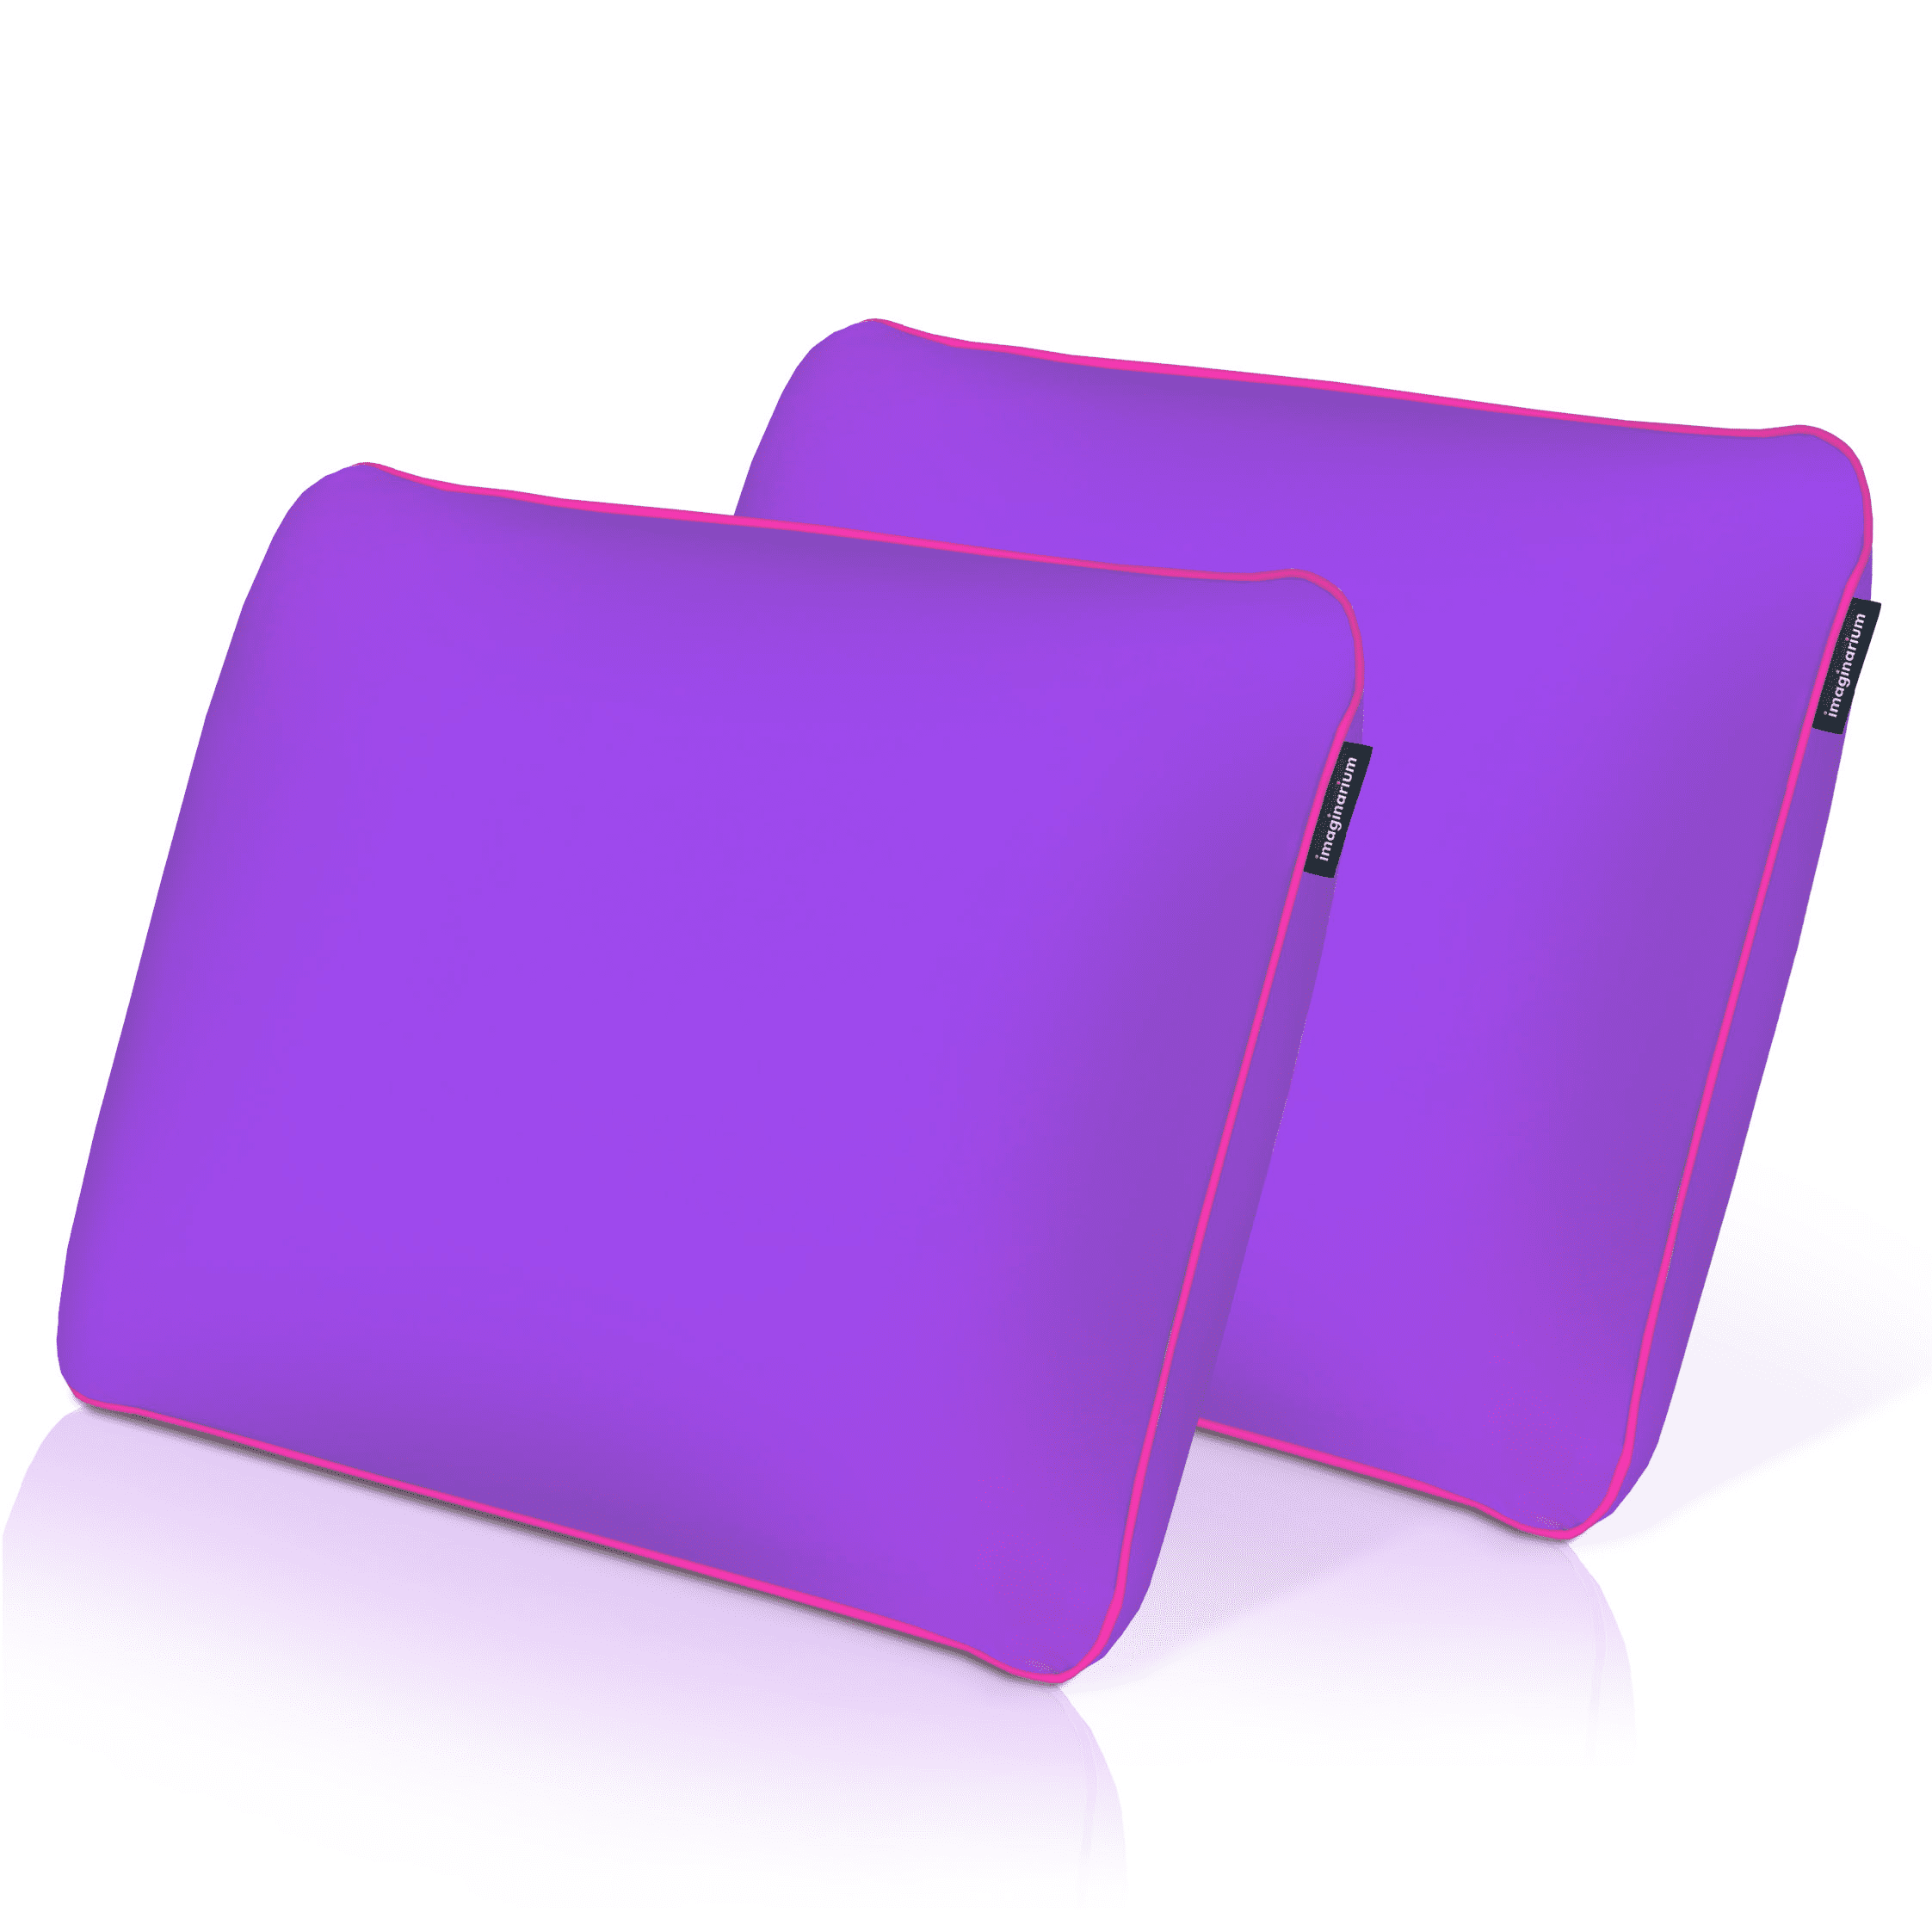 The Purple® Pillow: Official Kickstarter Video 